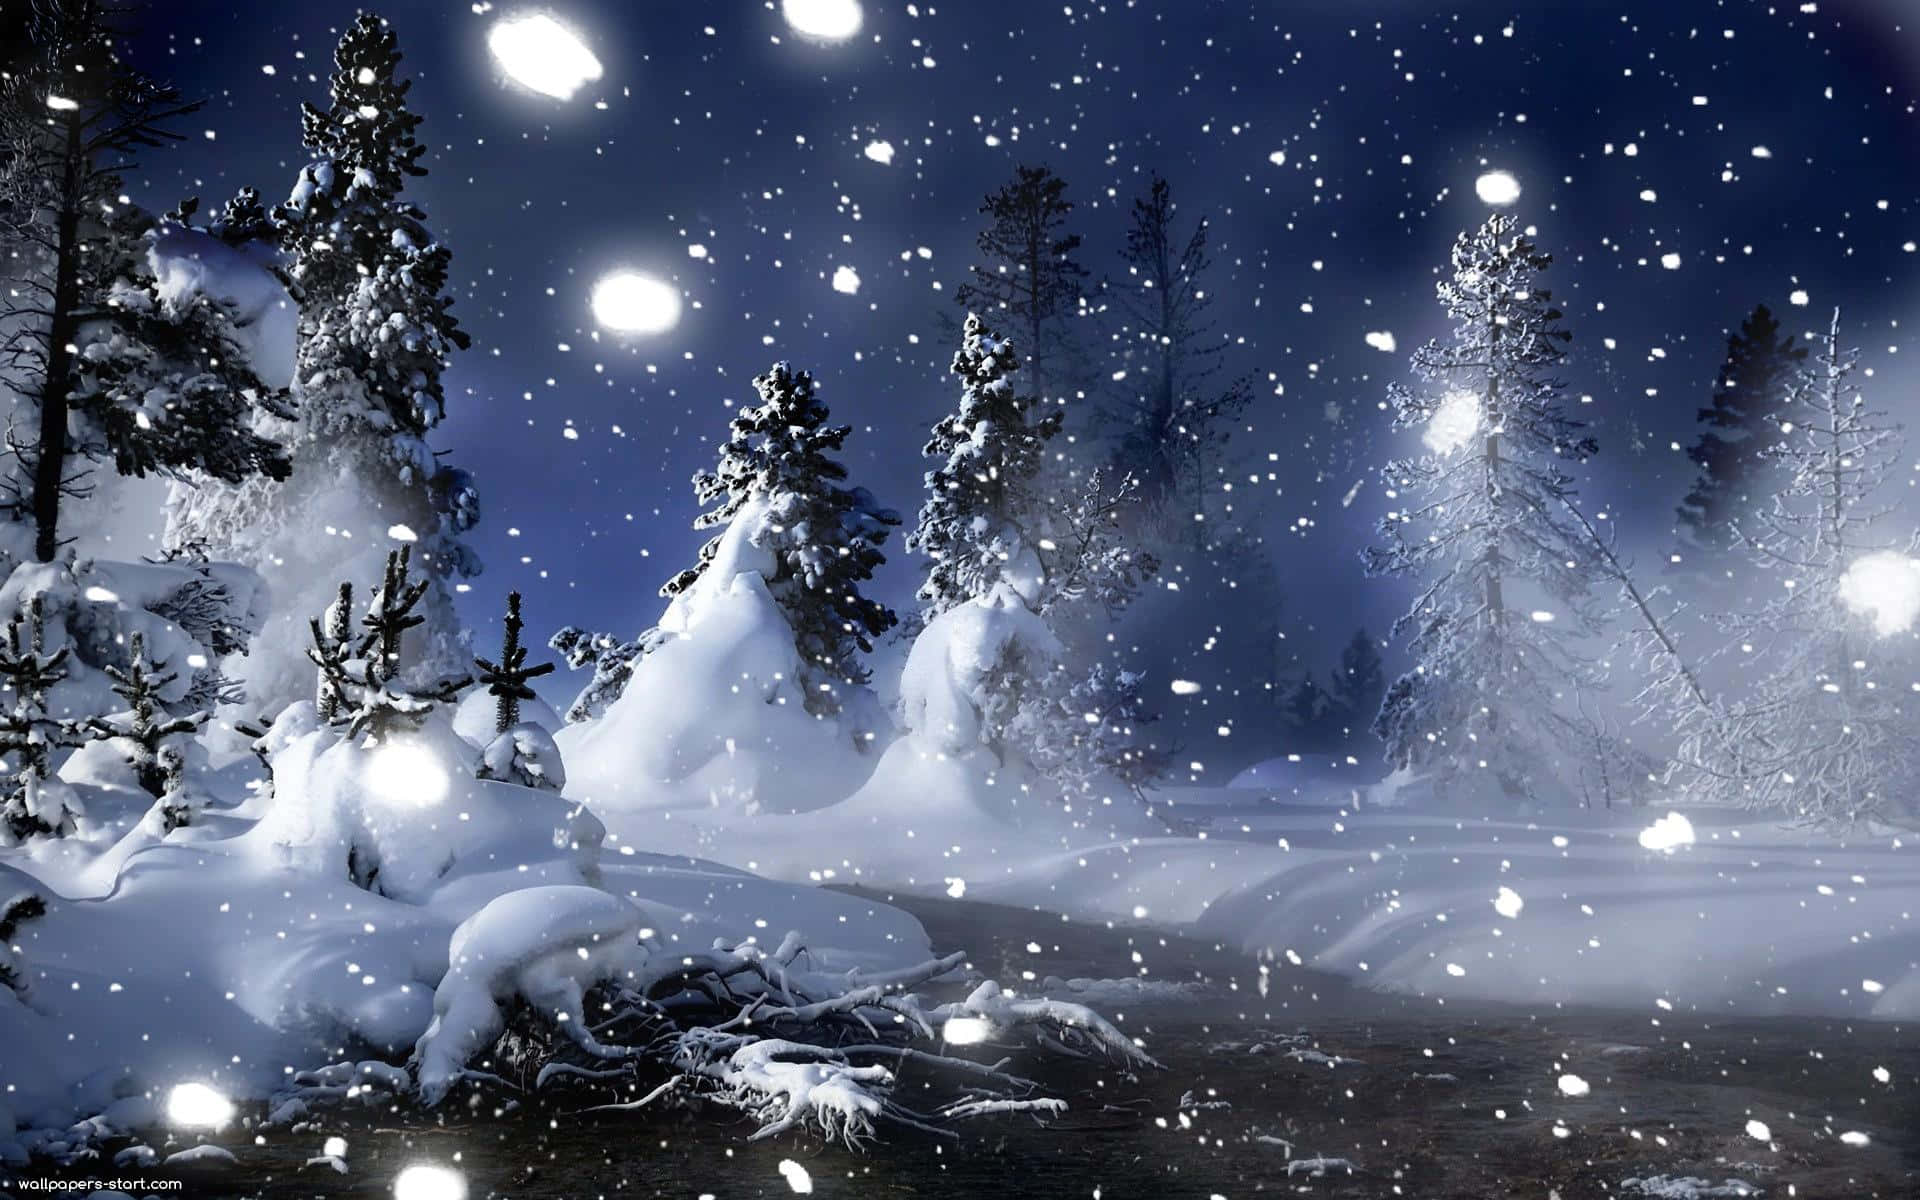 A Magical Winter Wonderland Wallpaper